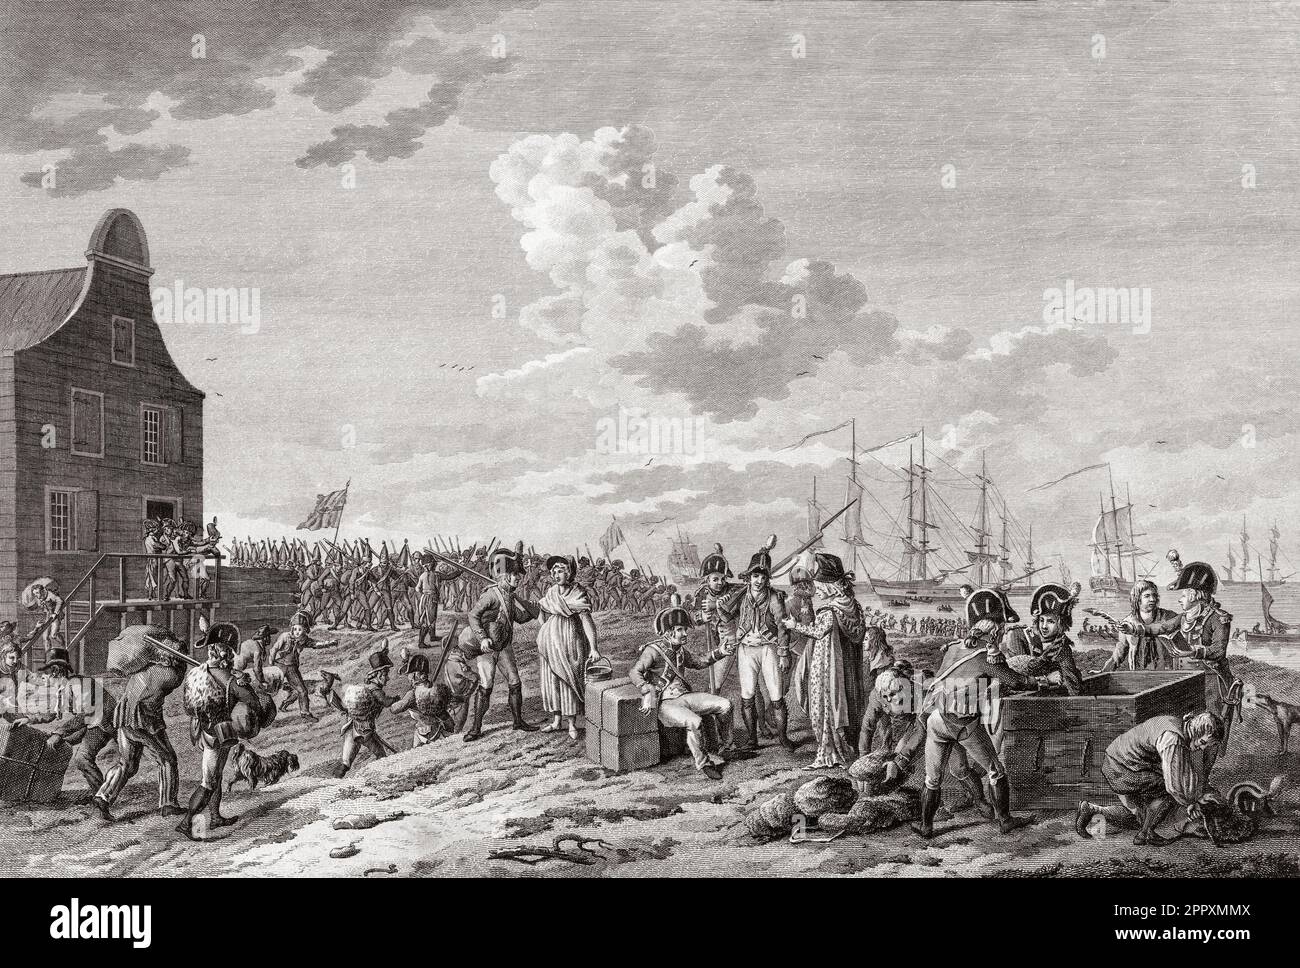 Rückzug britischer und russischer Truppen aus Den Helder, Niederlande, November 1799 am Ende der englisch-russischen Invasion in Holland während des Krieges der Zweiten Koalition. Nach einem Abdruck von Hendrik Roosing. Stockfoto